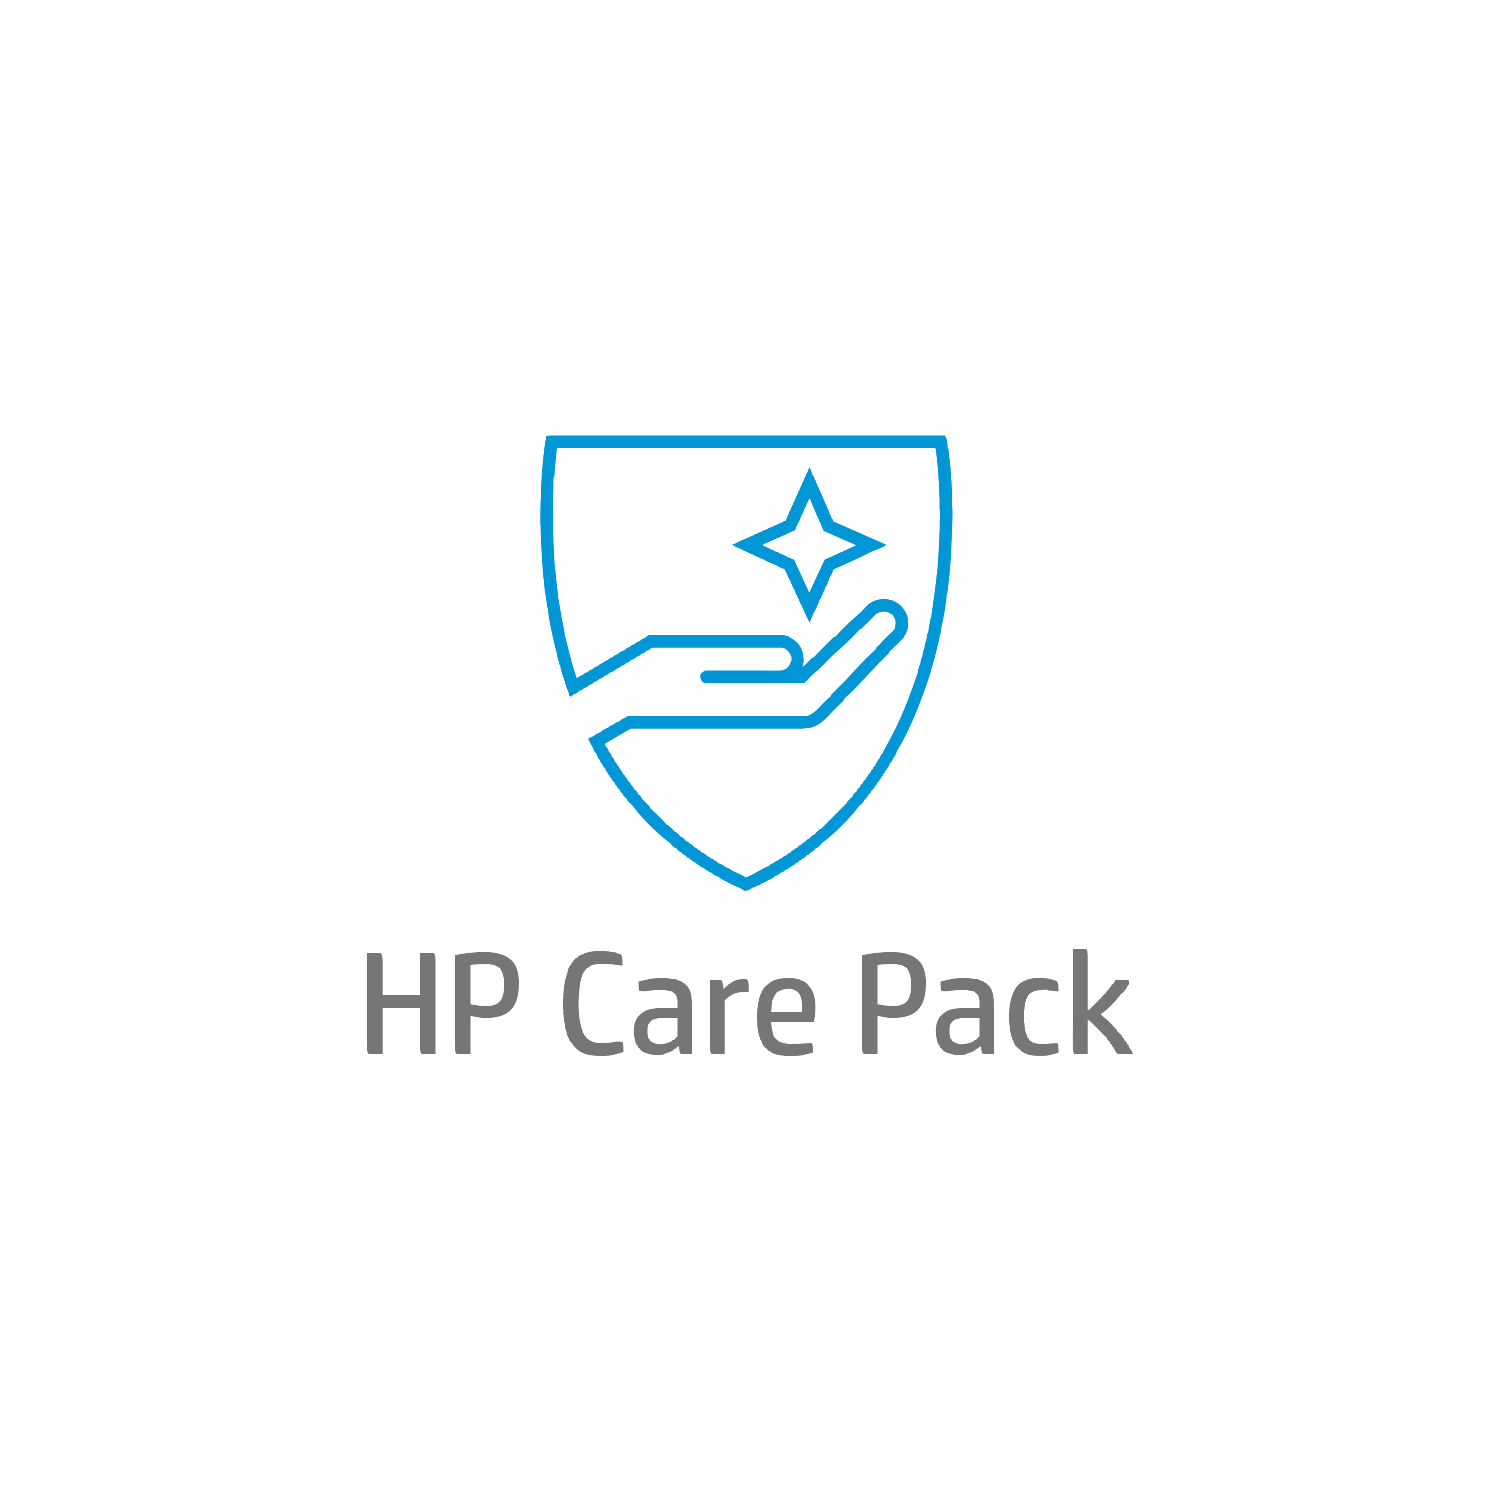 Bild von HP Active Care Lösungs-Support vor Ort mit Reaktion bis zum nächsten Werktag für Notebooks, 3 Jahre, Active Care, Remote und vor Ort, Unter Garantie, Standardarbeitstage - 9 Stunden, 3 Jahre, Reaktion am nächsten Arbeitstag